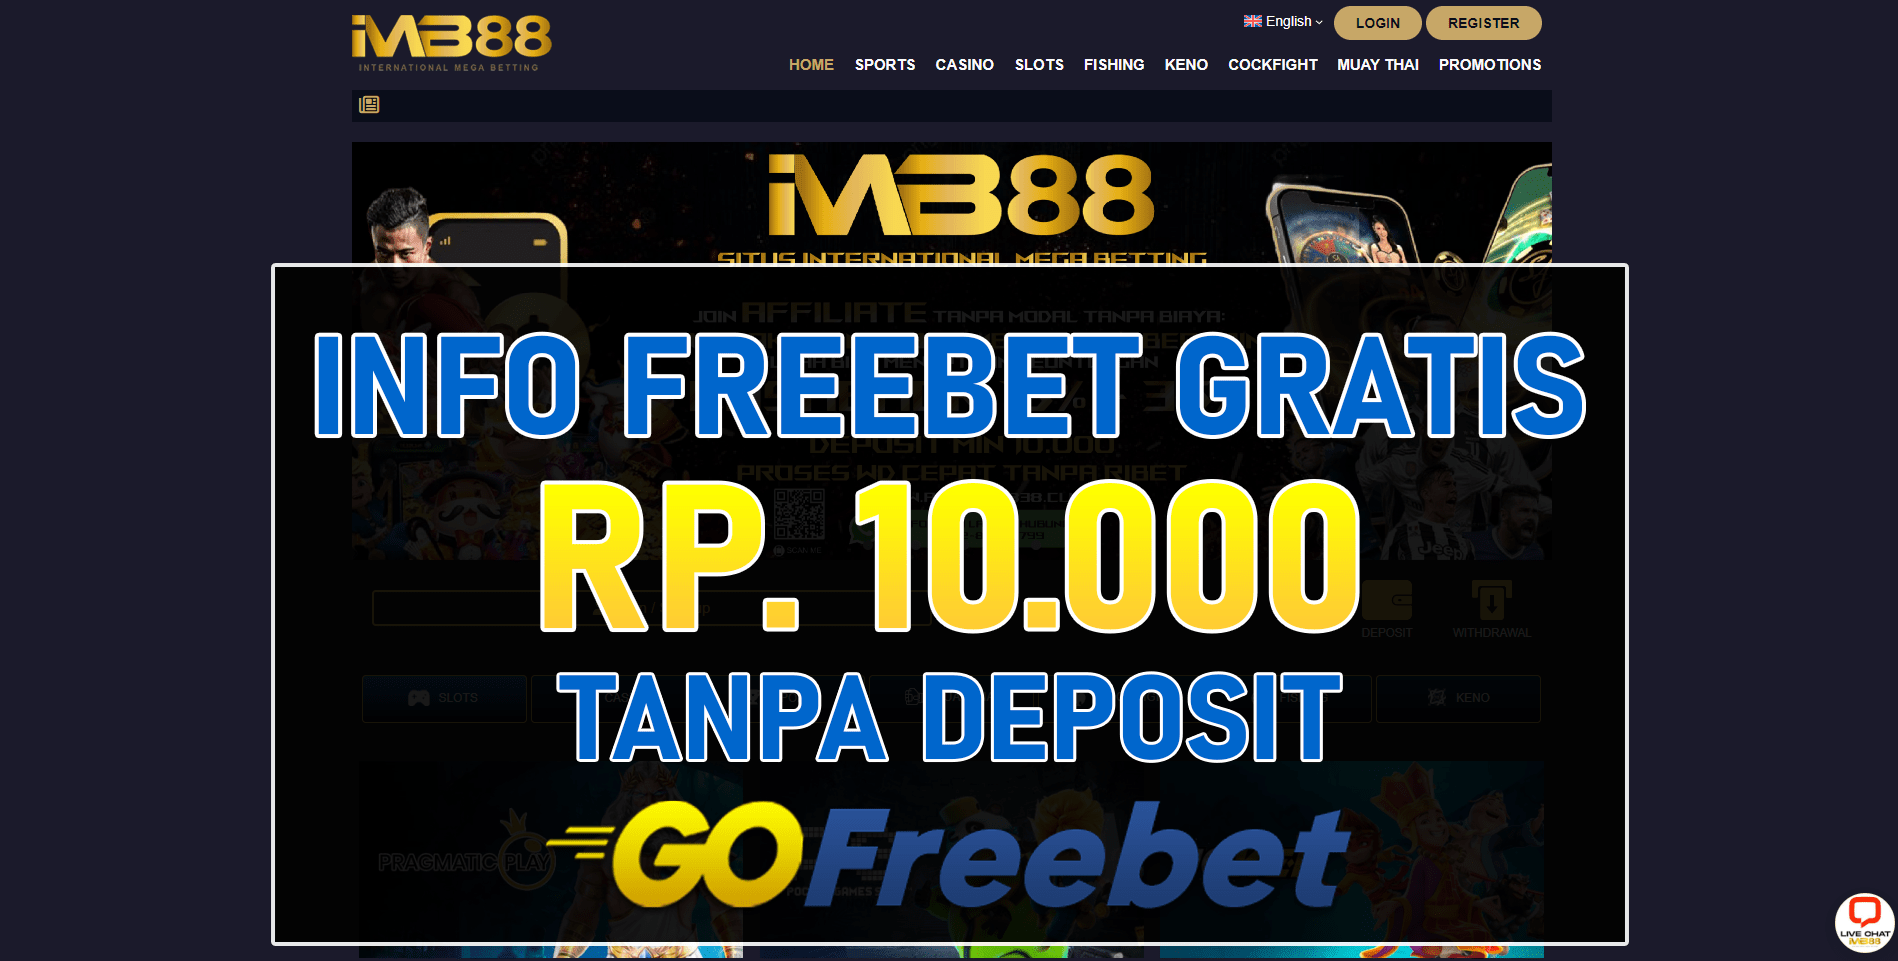 Imb88 Freebet Gratis Rp 10.000 Tanpa Deposit